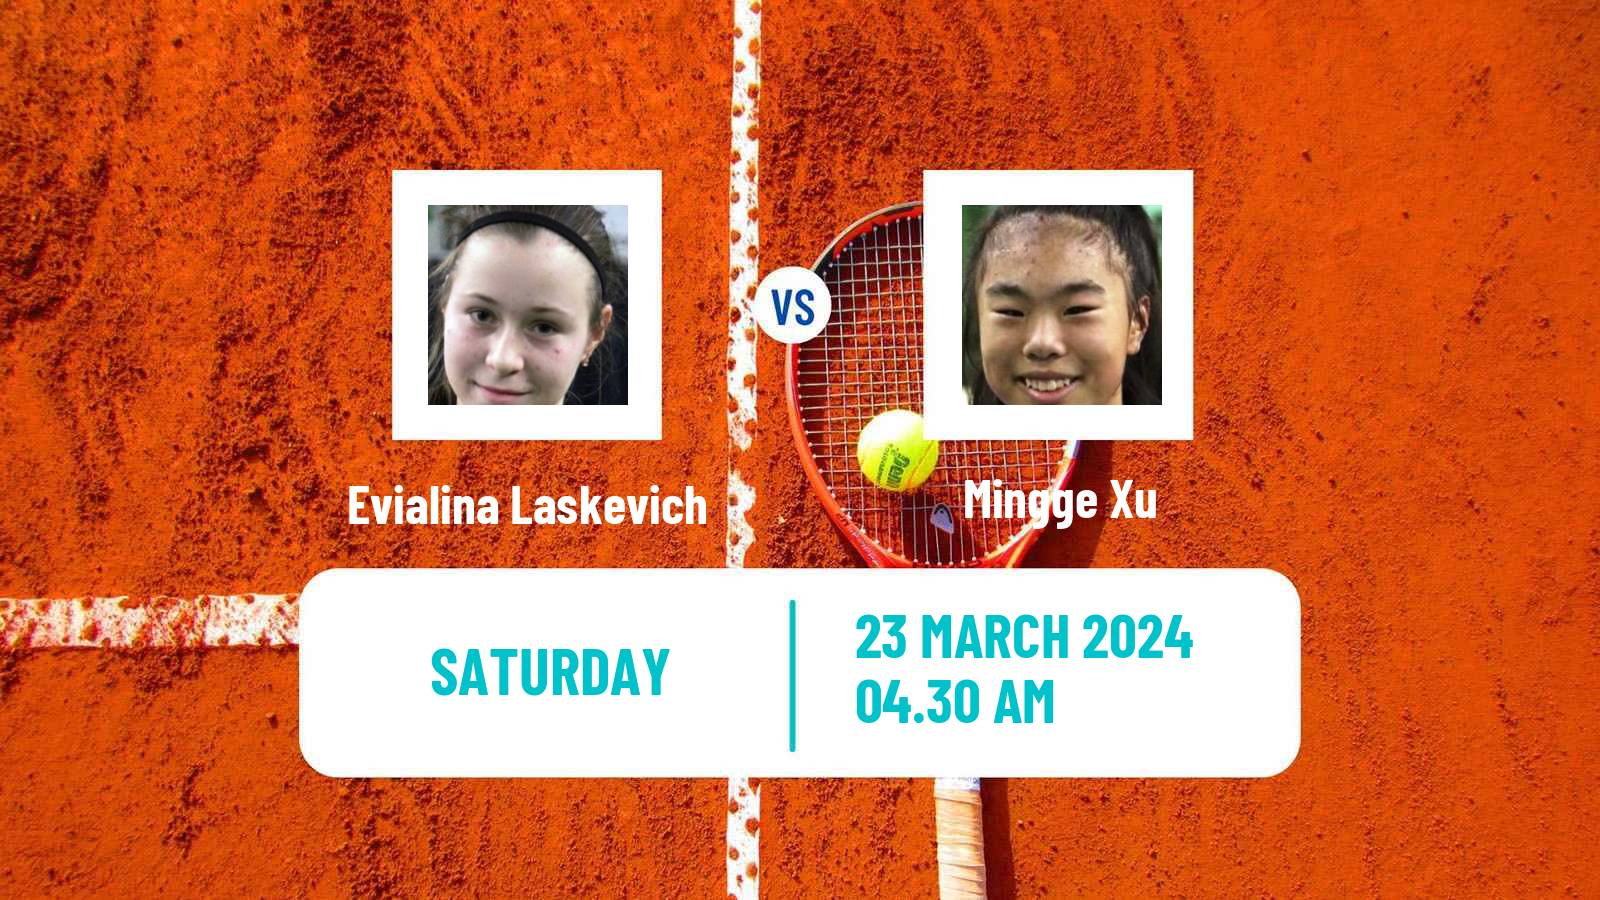 Tennis ITF W15 Monastir 10 Women Evialina Laskevich - Mingge Xu